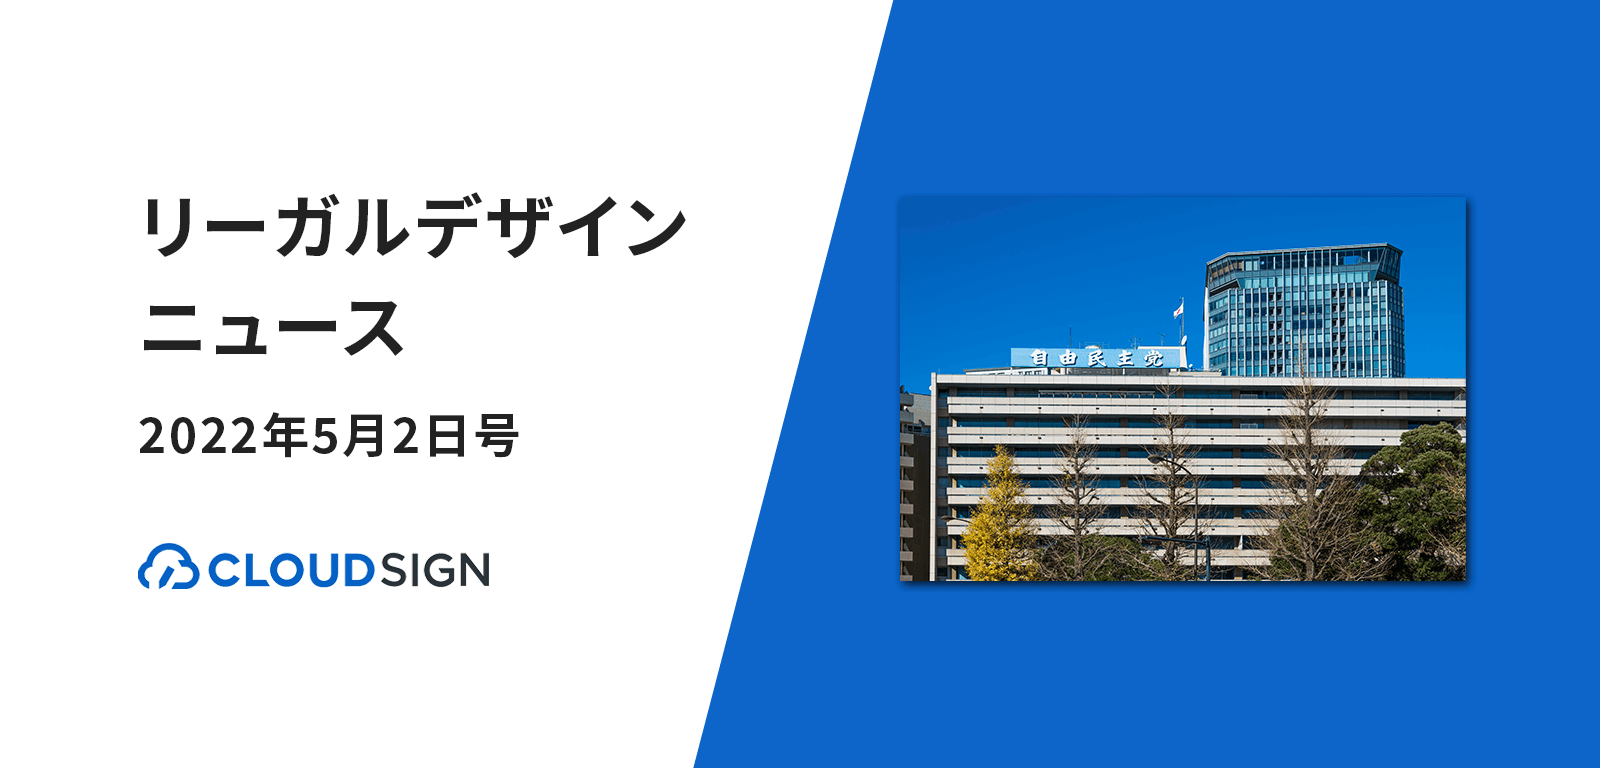 リーガルデザインニュース 2022年5月2日号 —「デジタル・ニッポン2022」に電子署名提言掲載